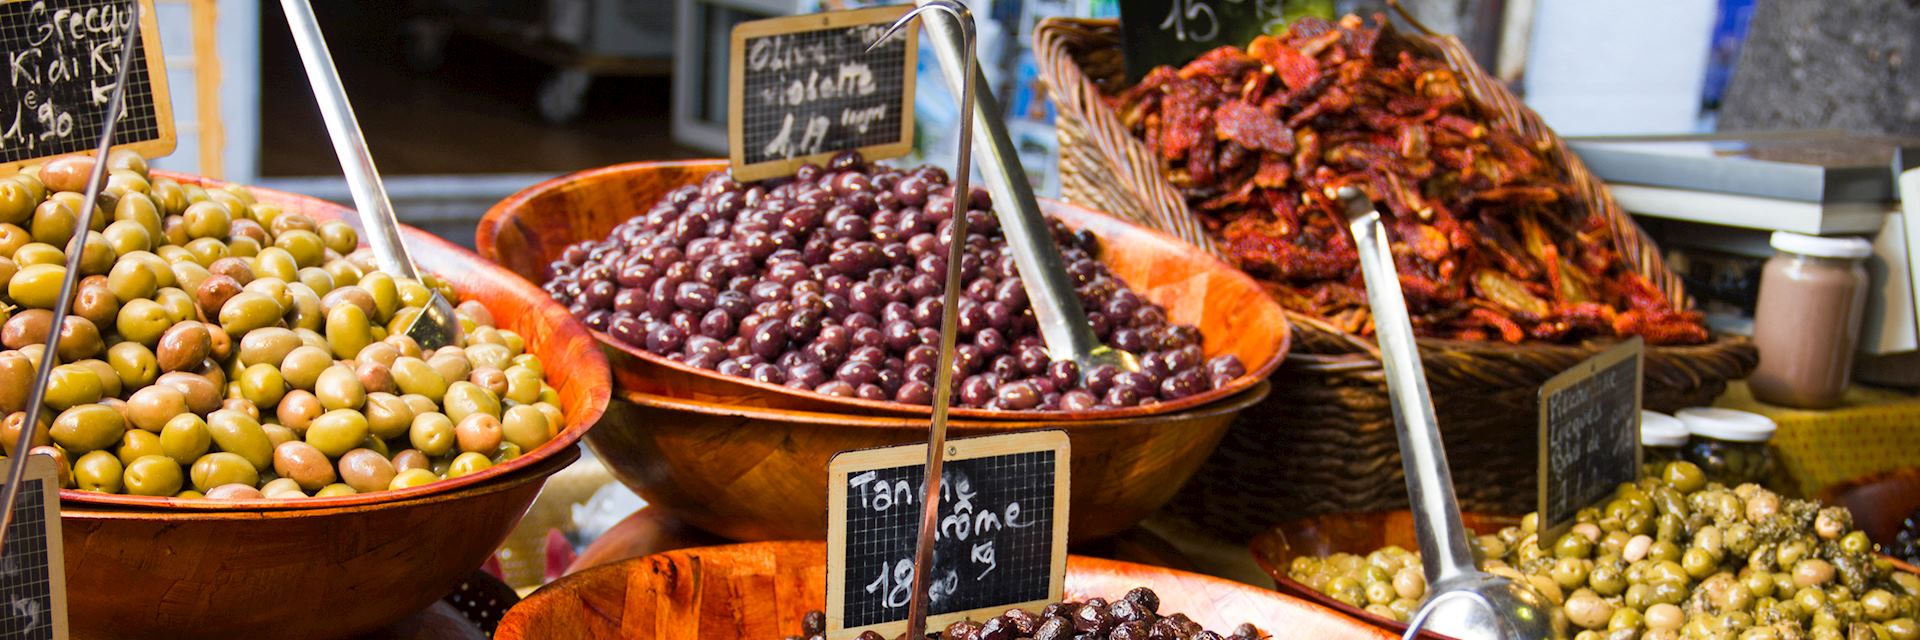 Olives for sale in a market, France